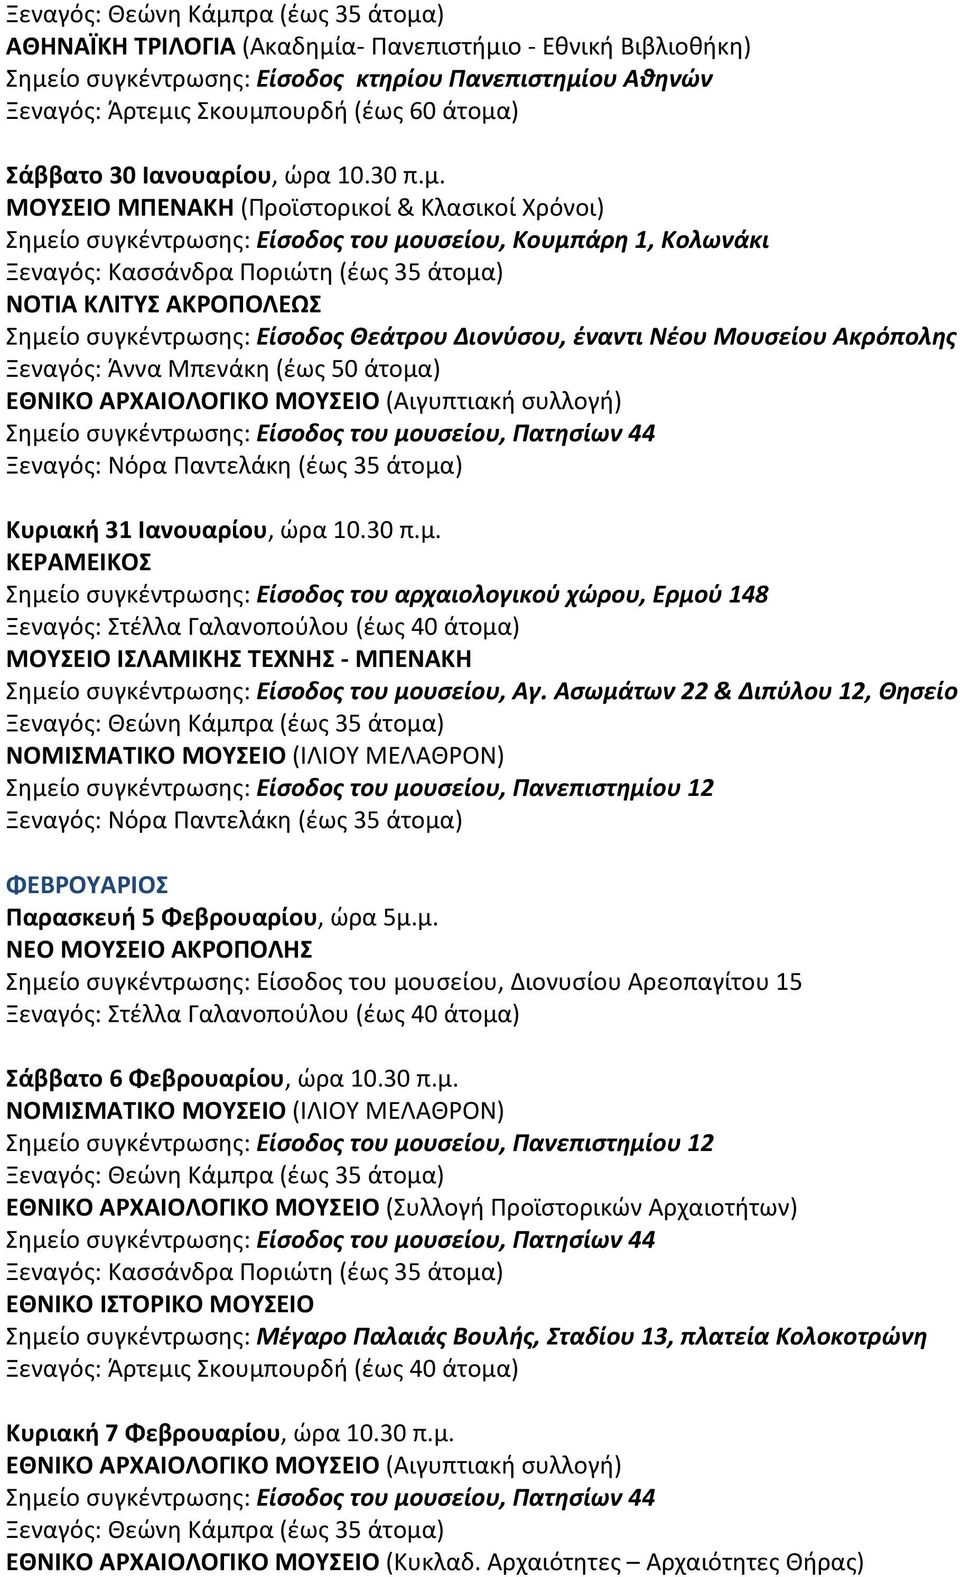 Ασωμάτων 22 & Διπύλου 12, Θησείο ΦΕΒΡΟΥΑΡΙΟΣ Παρασκευή 5 Φεβρουαρίου, ώρα 5μ.μ. Σάββατο 6 Φεβρουαρίου, ώρα 10.30 π.μ. ΕΘΝΙΚΟ ΑΡΧΑΙΟΛΟΓΙΚΟ ΜΟΥΣΕΙΟ (Συλλογή Προϊστορικών Αρχαιοτήτων) ΕΘΝΙΚΟ ΙΣΤΟΡΙΚΟ